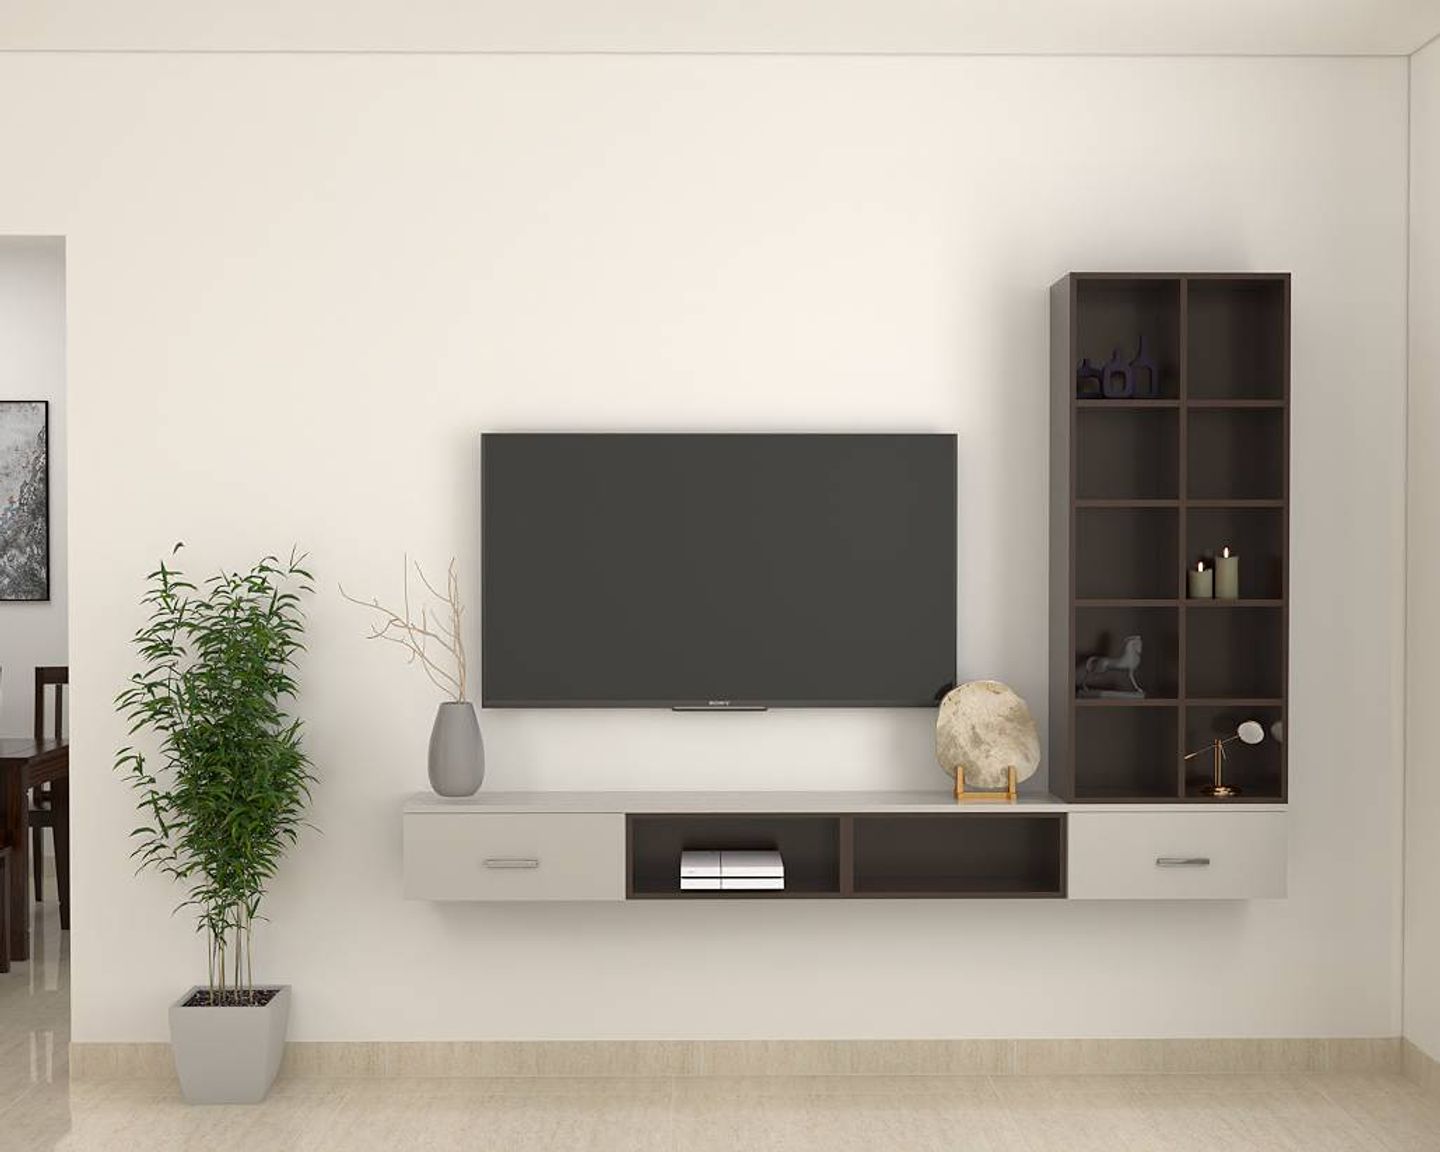 Minimalistic TV Unit Design - Livspace